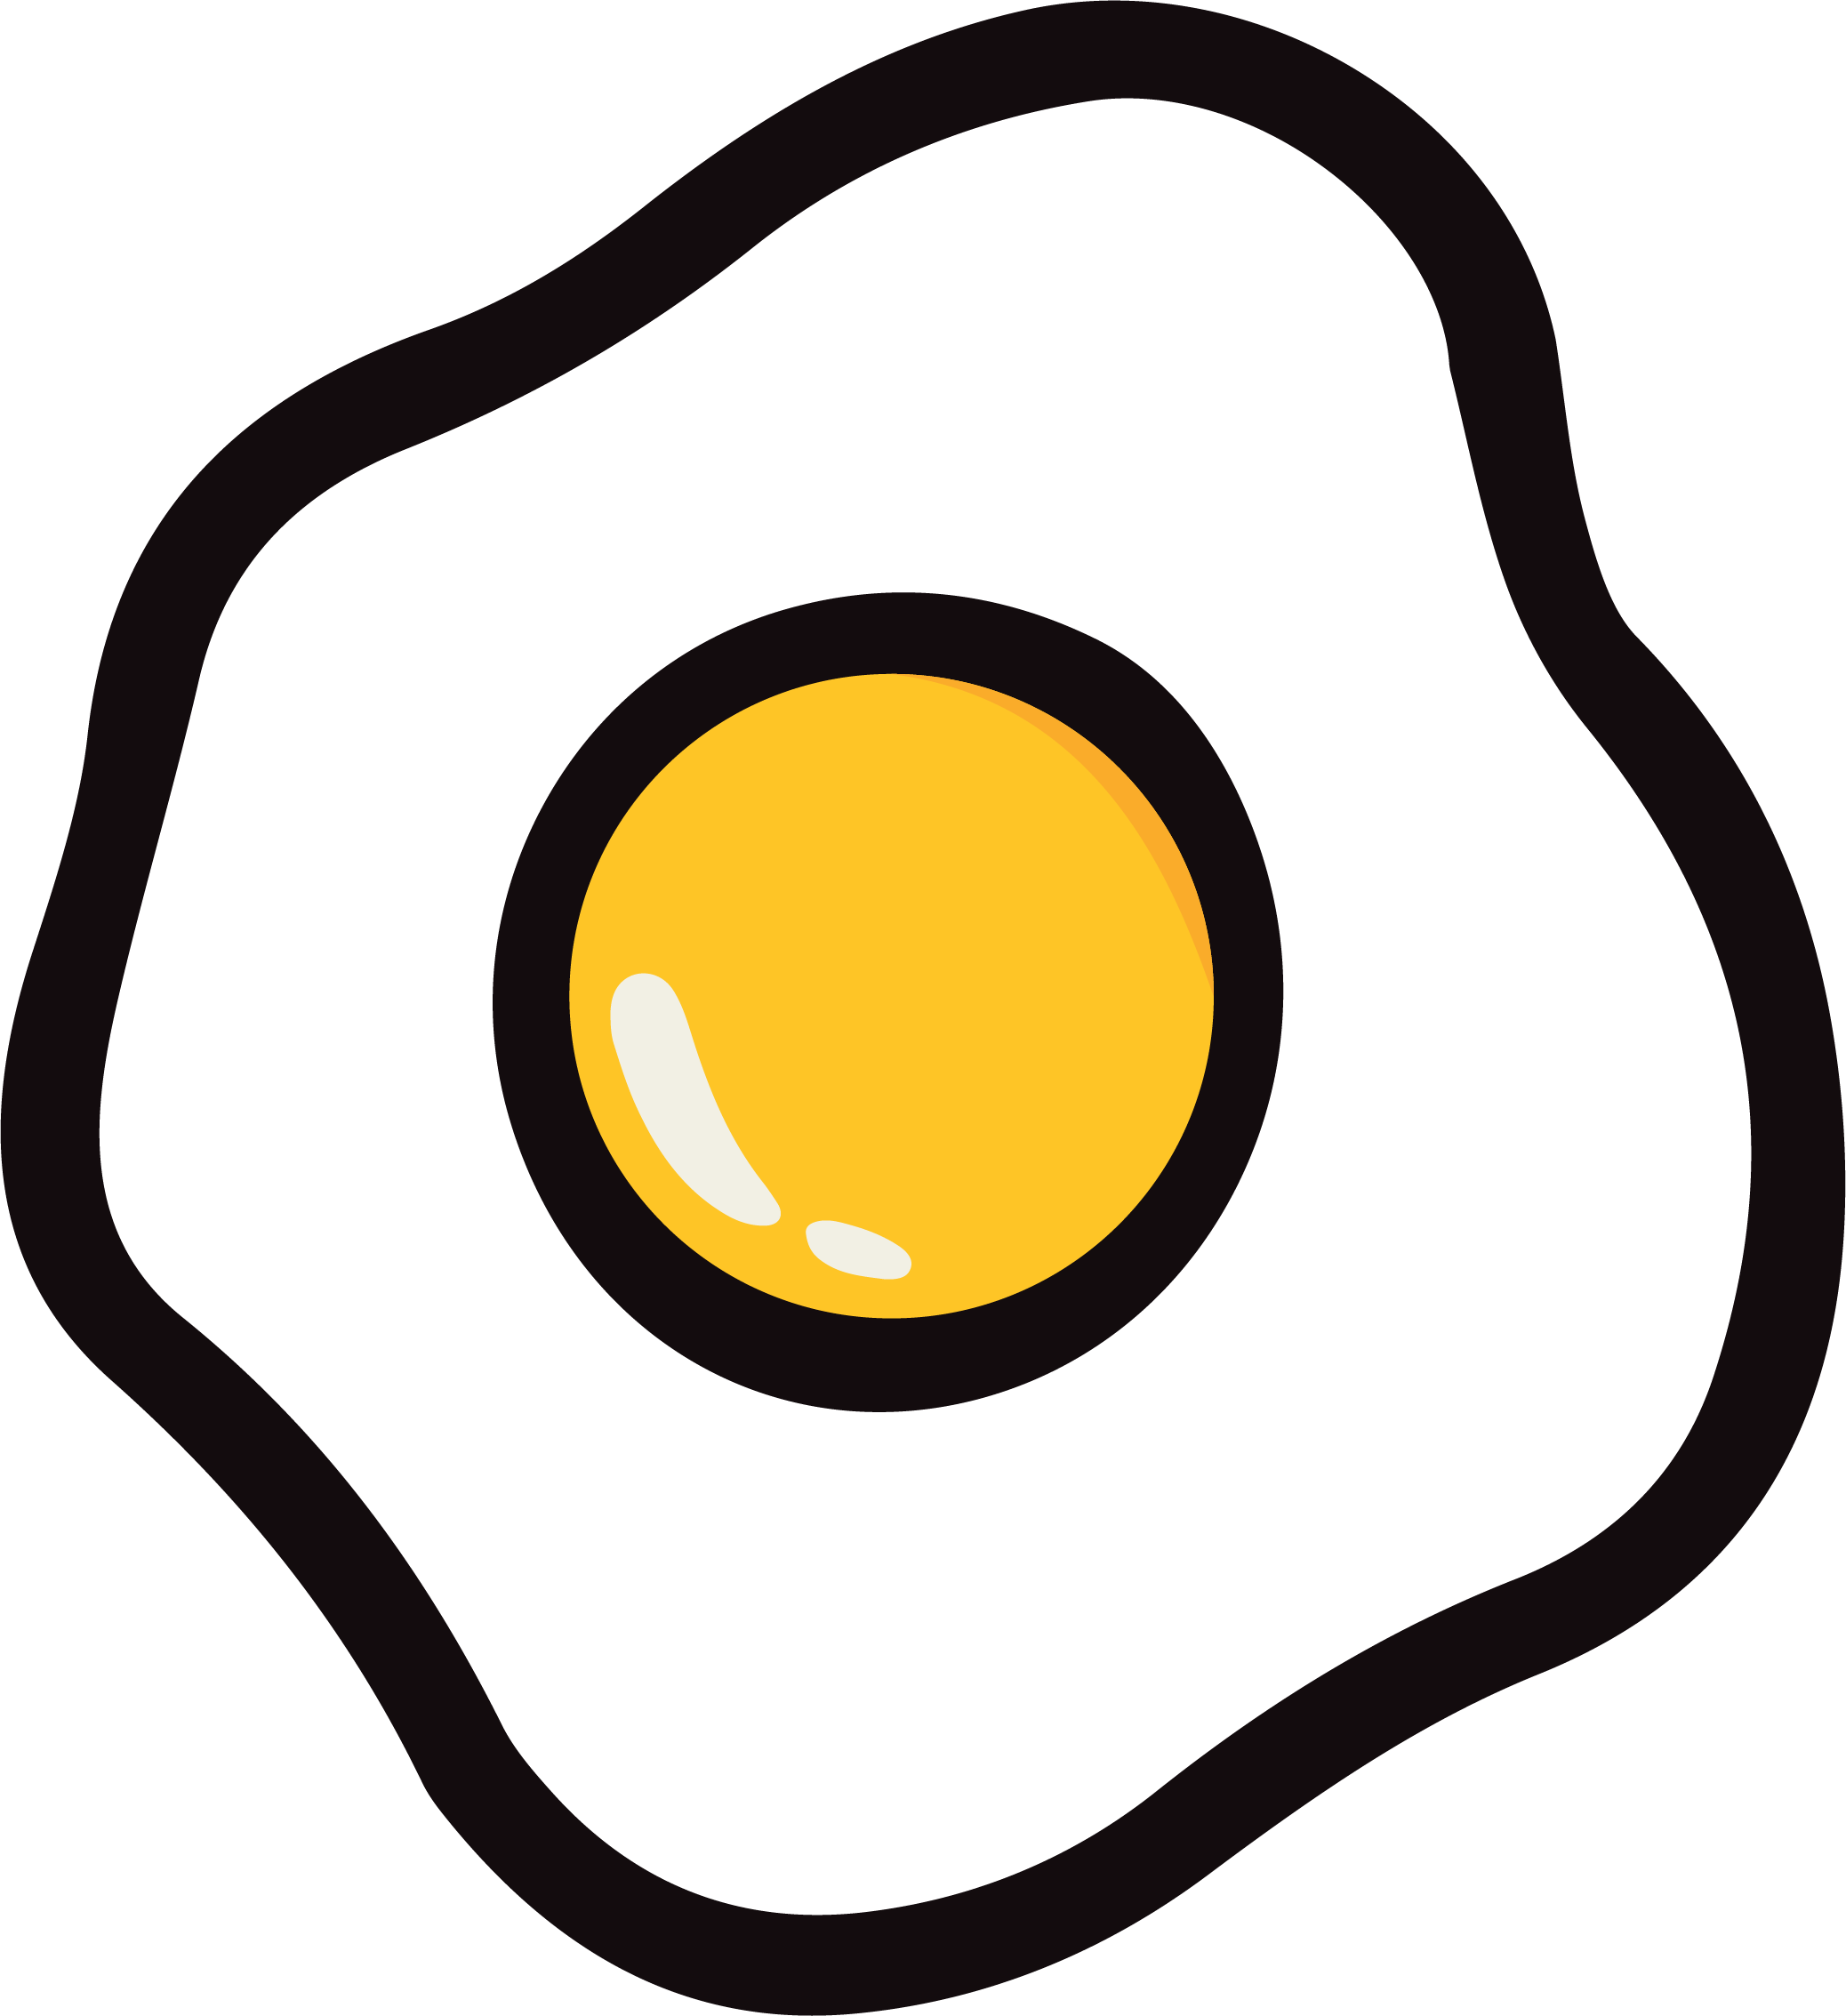 Half Egg Fried Free PNG Image